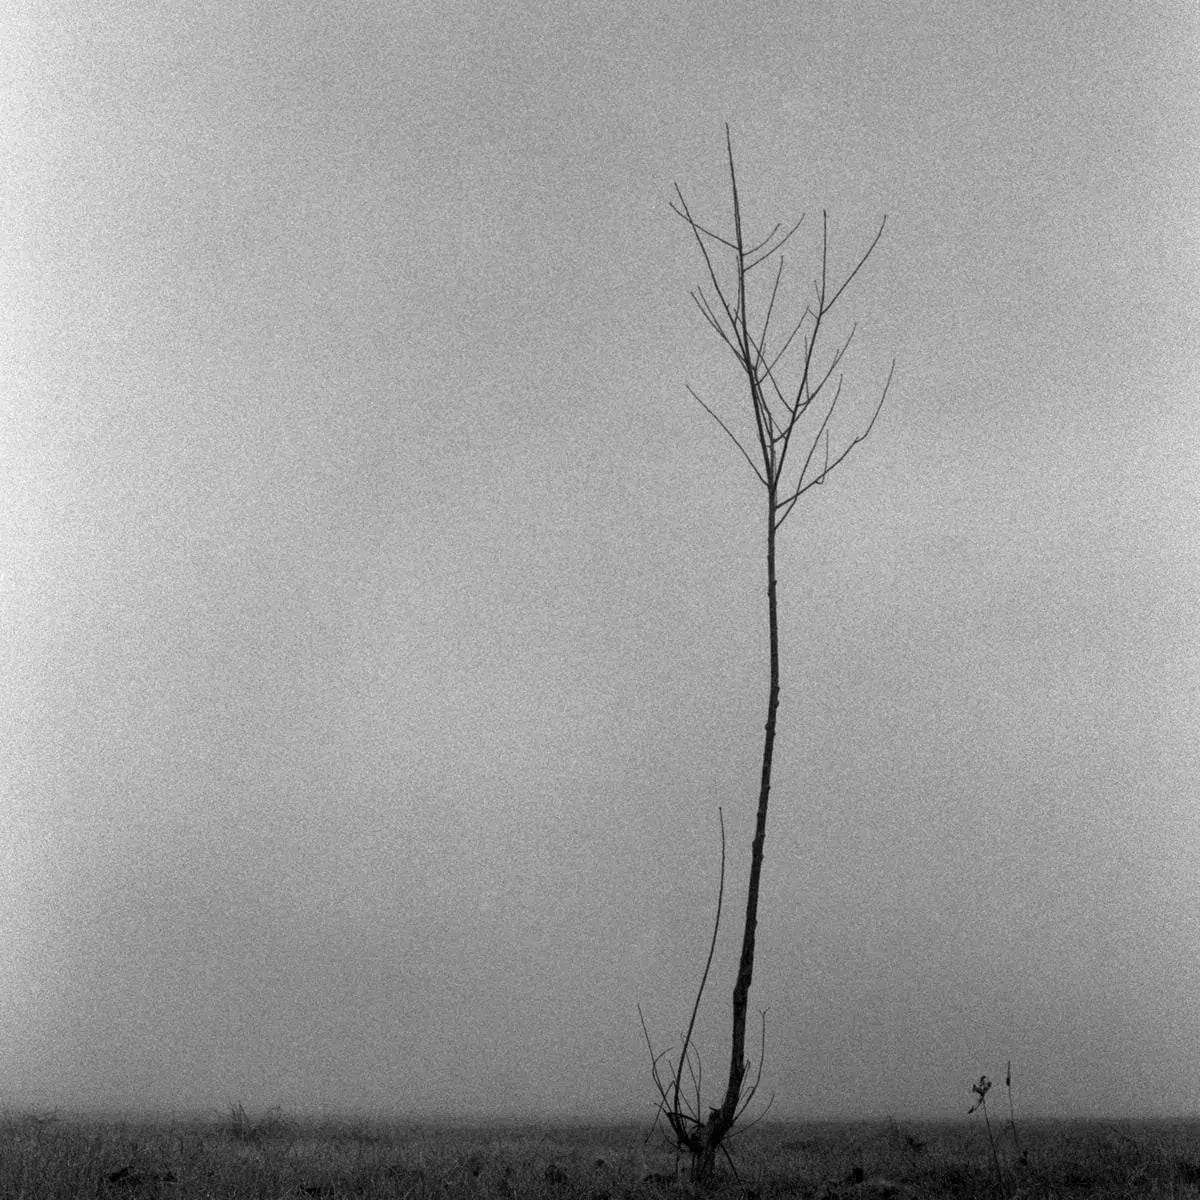 Tree Mist, by Andrea Buzzichelli-PurePhoto